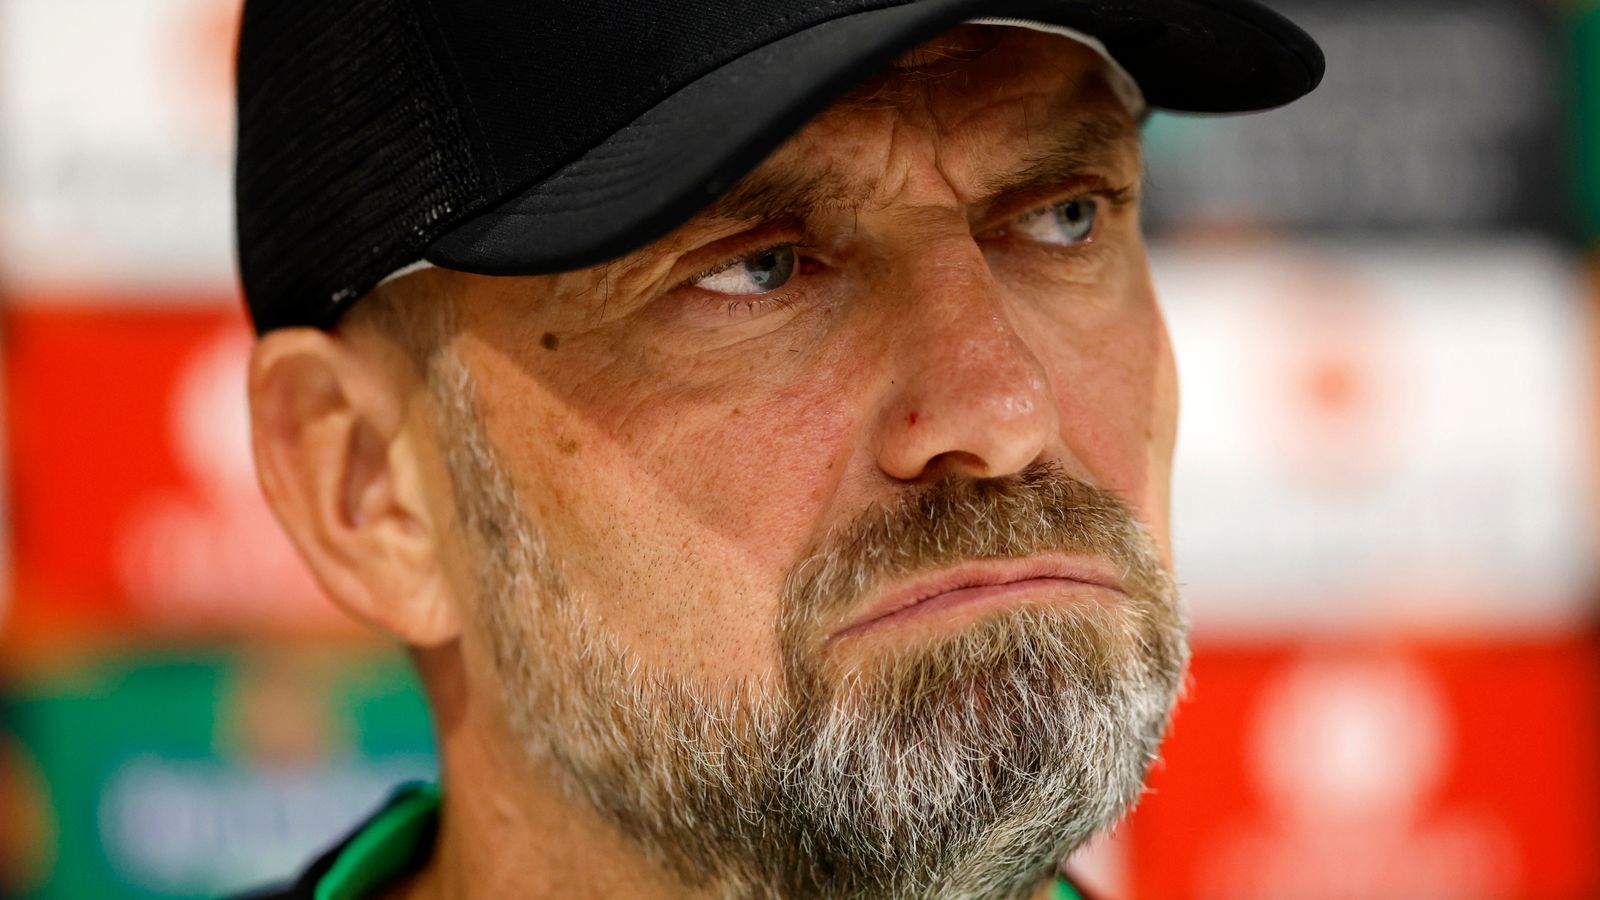 Liverpool boss Jurgen Klopp demands Spurs match to be replayed after VAR mistake